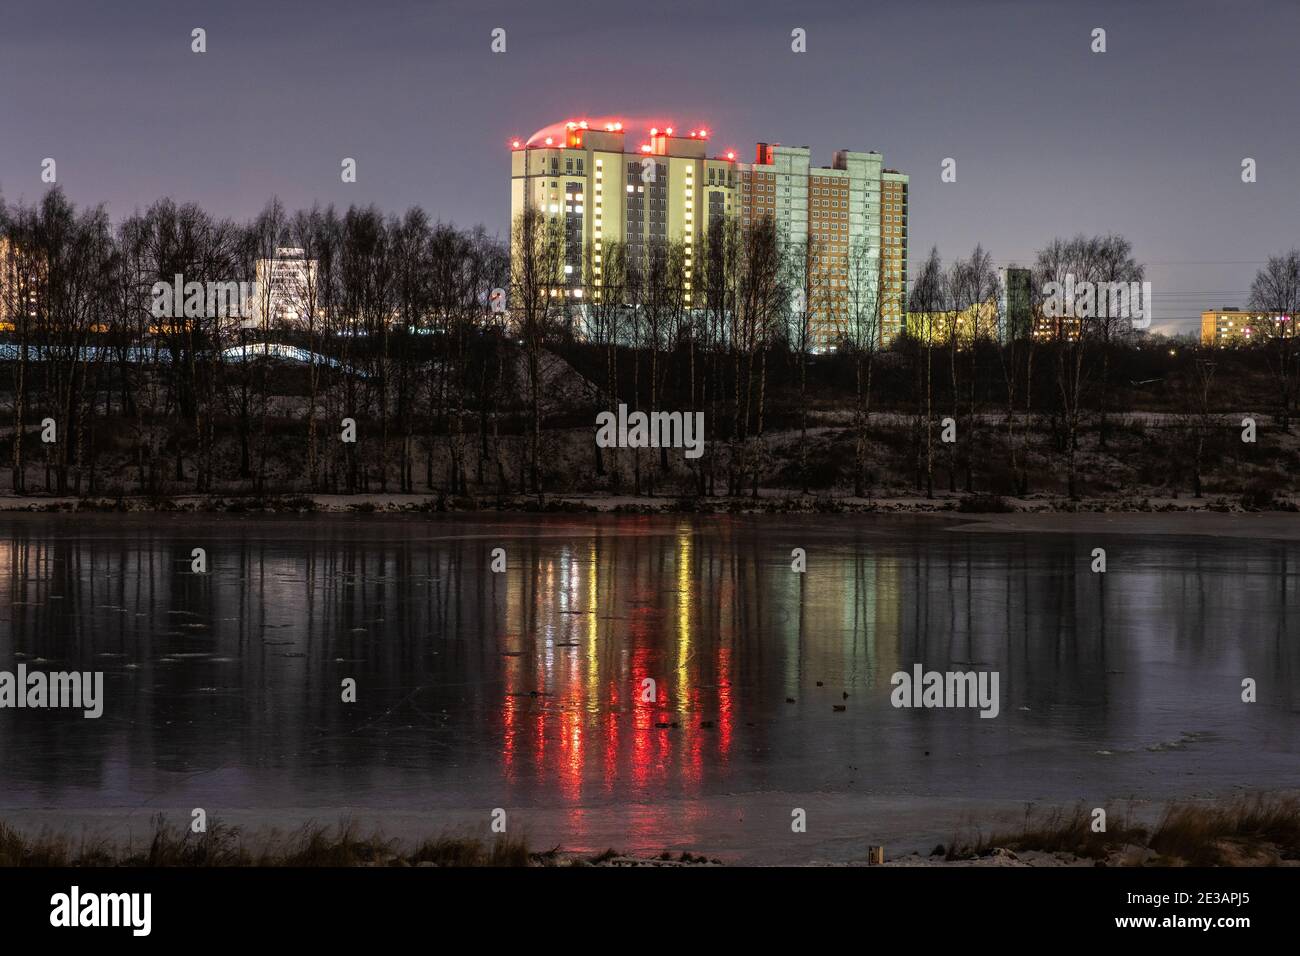 Alto edificio sulla riva del fiume Uvod e il suo riflesso sulla superficie ghiacciata dello specchio, Ivanovo, Russia. Foto Stock